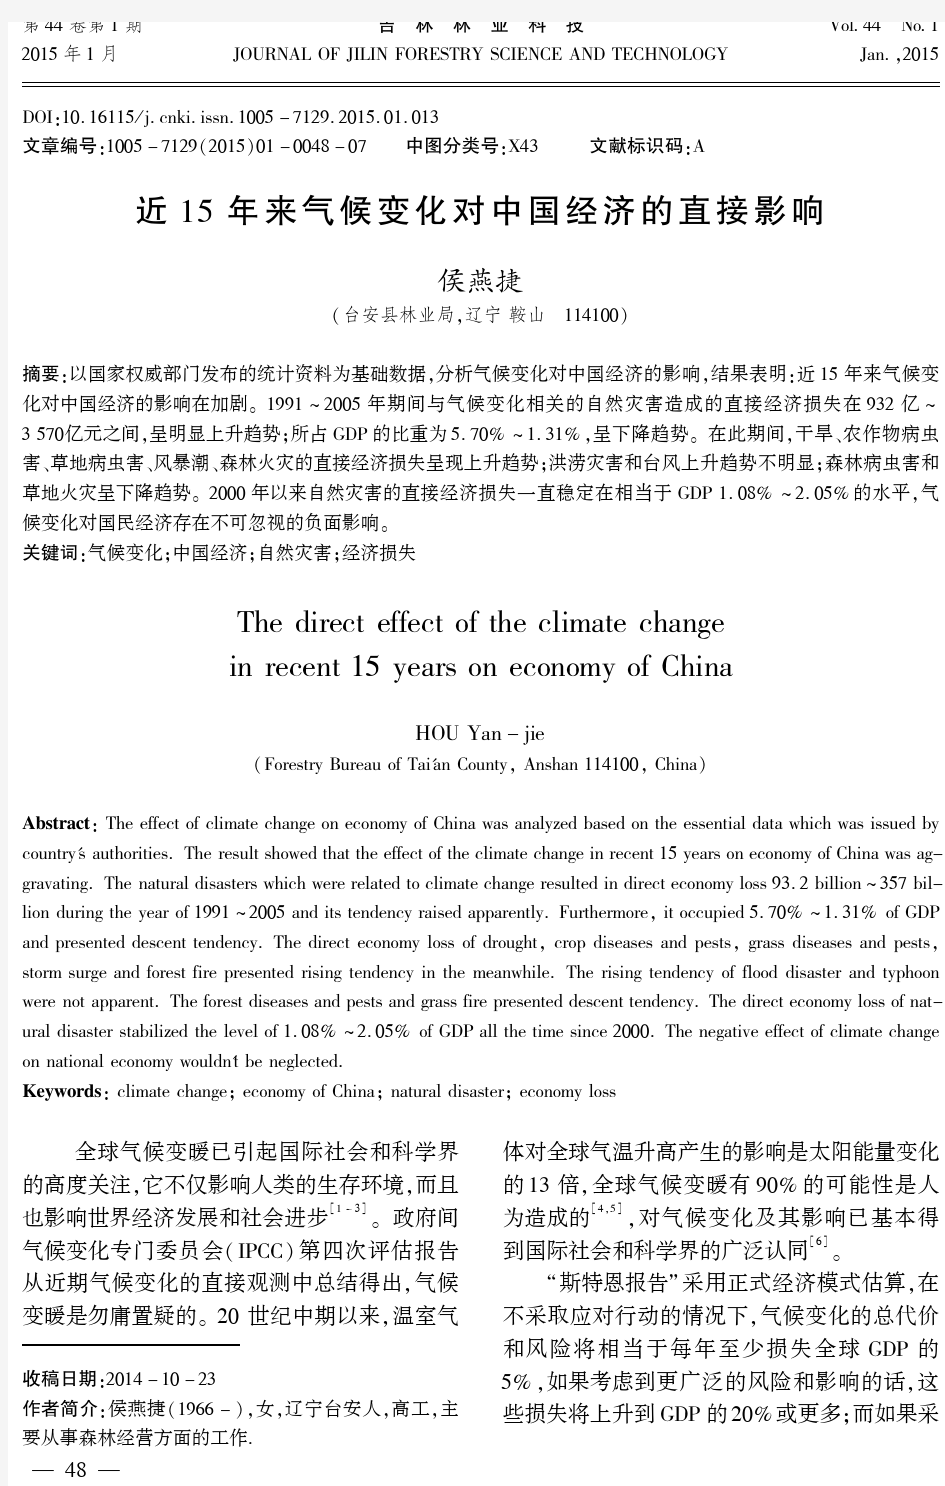 近15年来气候变化对中国经济的直接影响